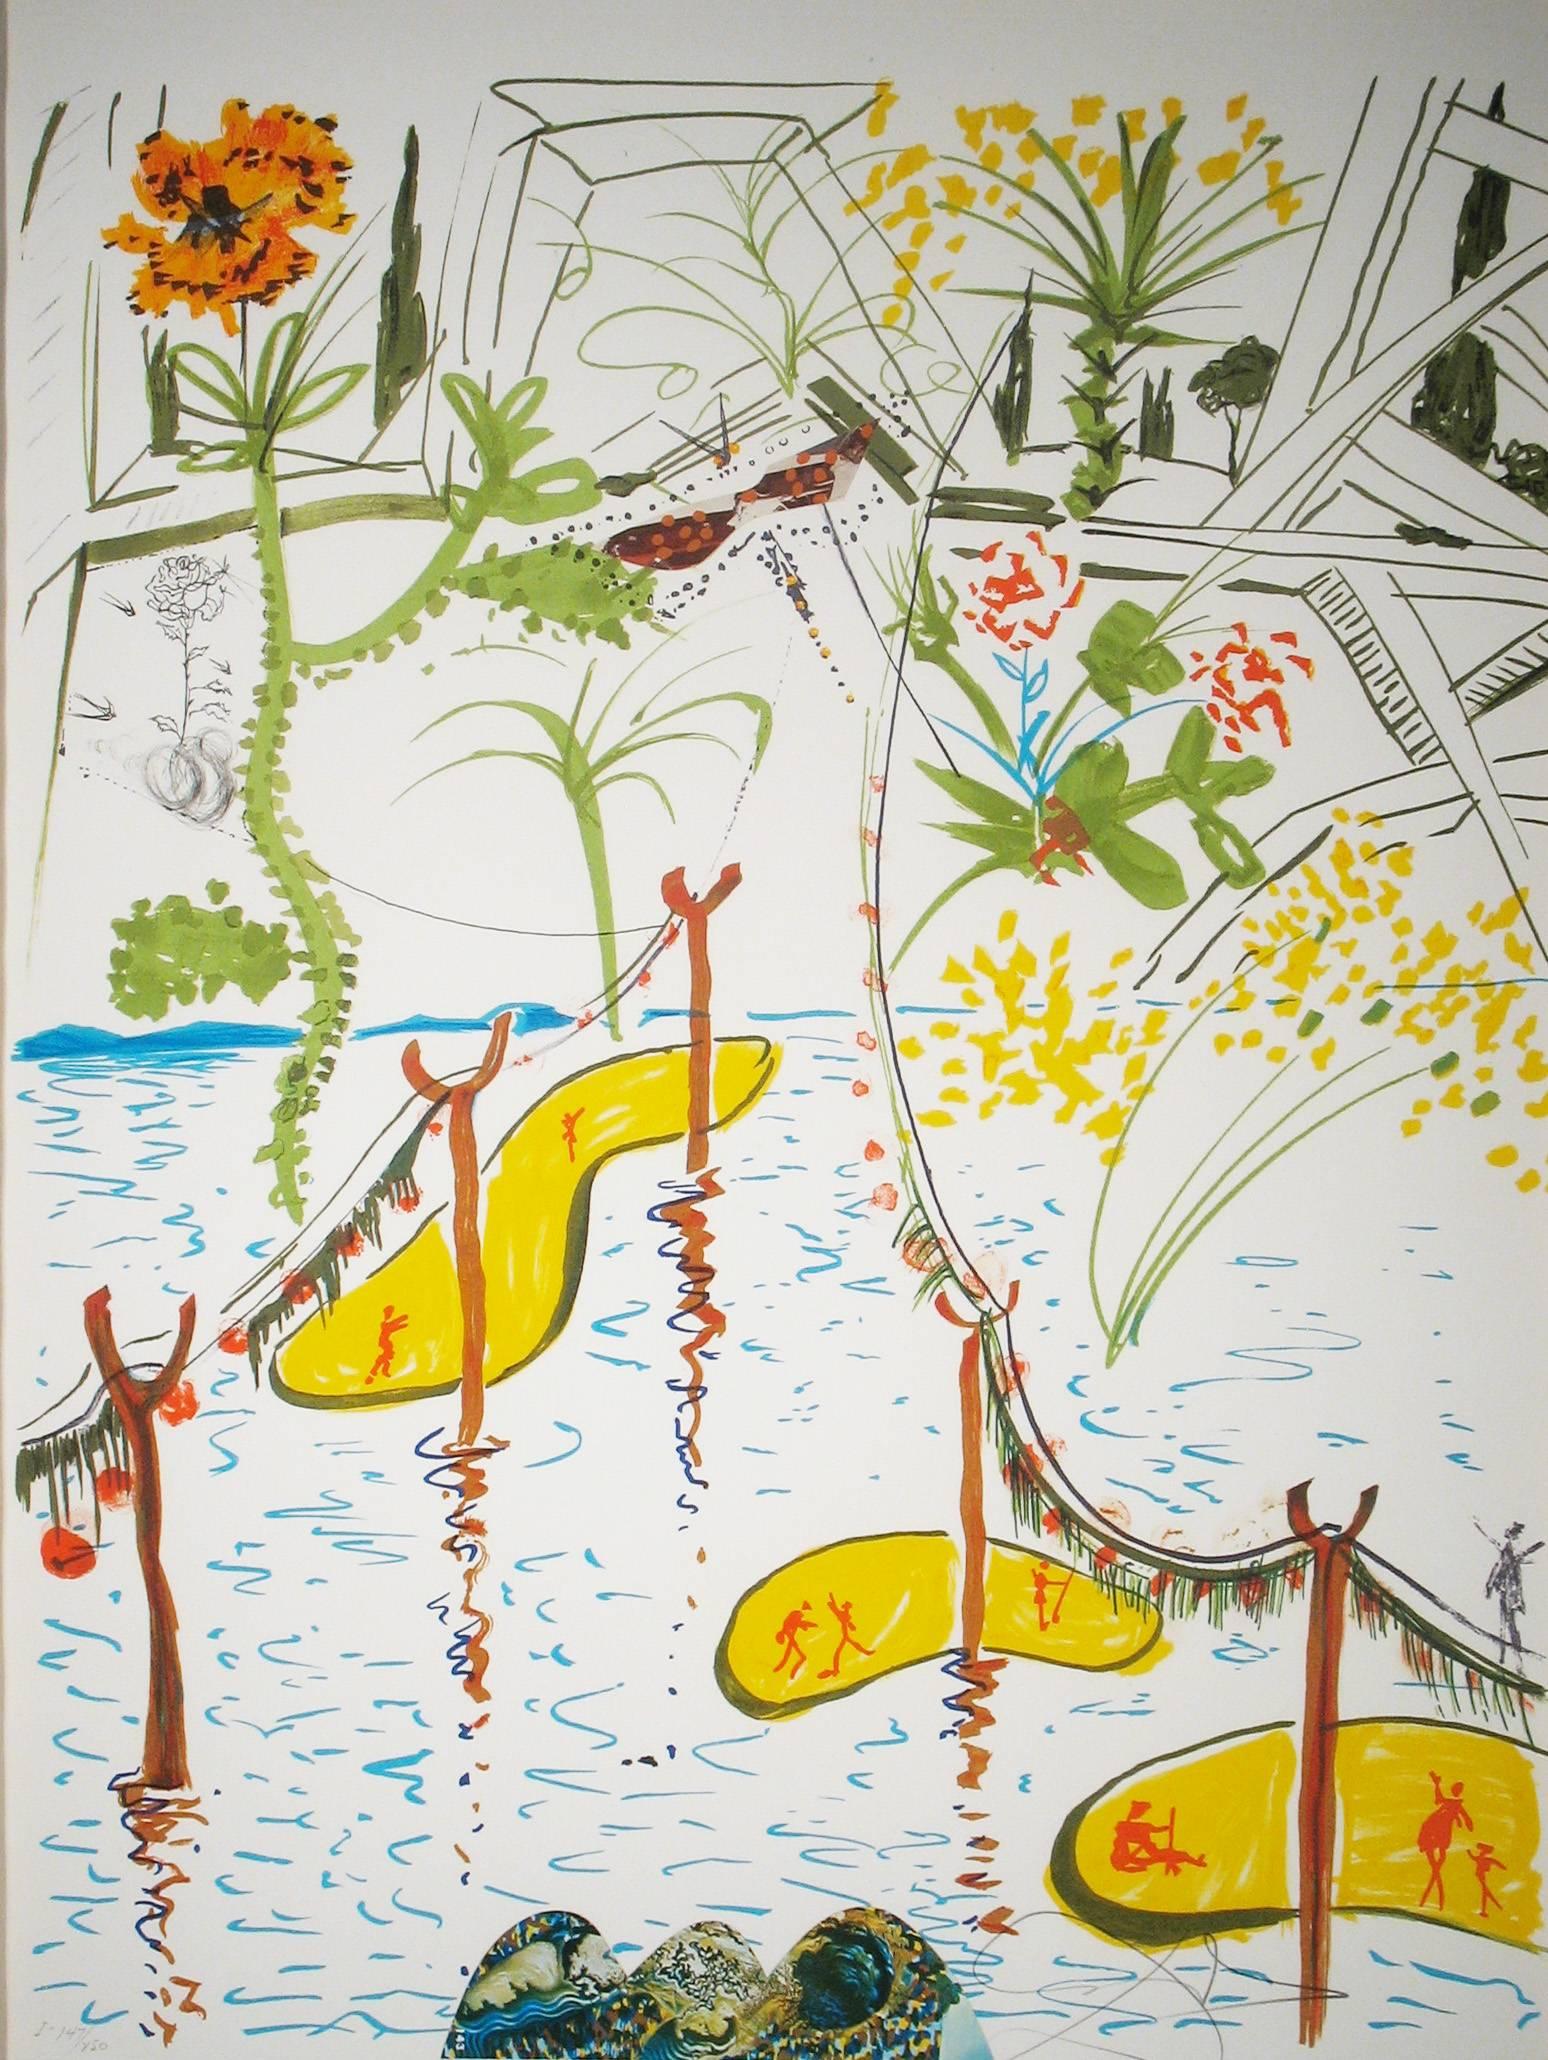 Biological Garden - Print by Salvador Dalí